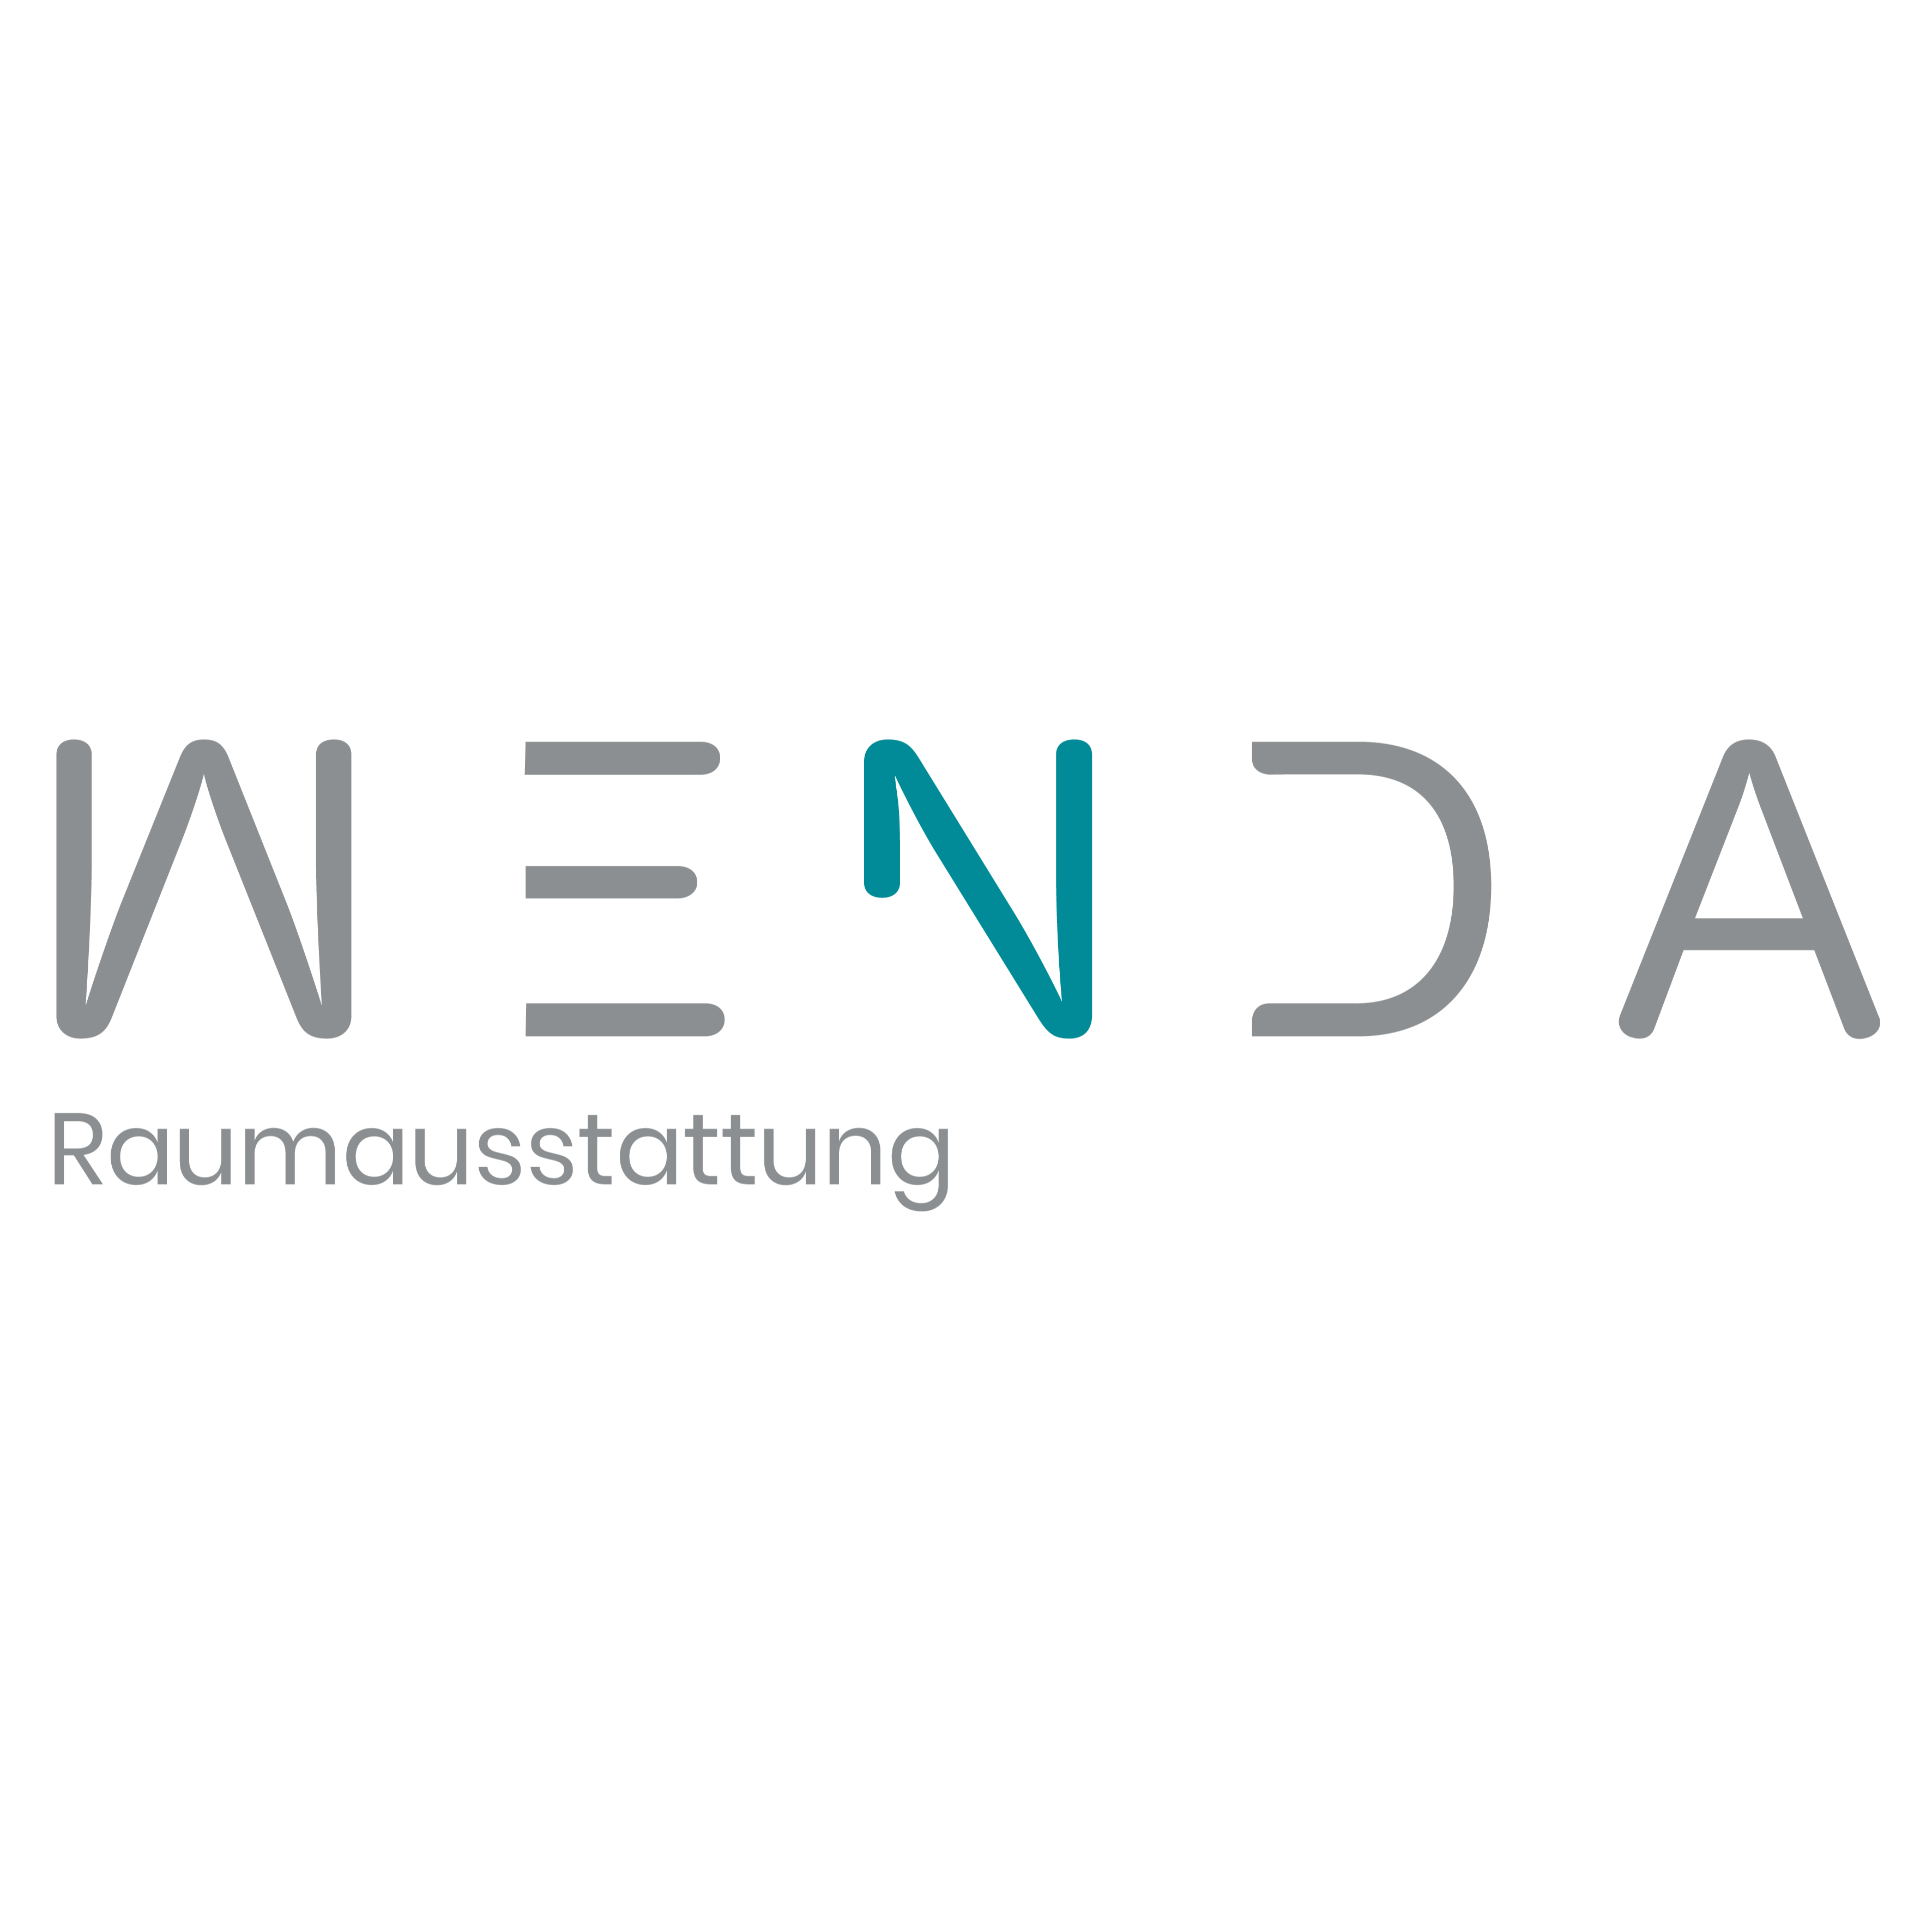 Logo von Wenda Raumausstattung